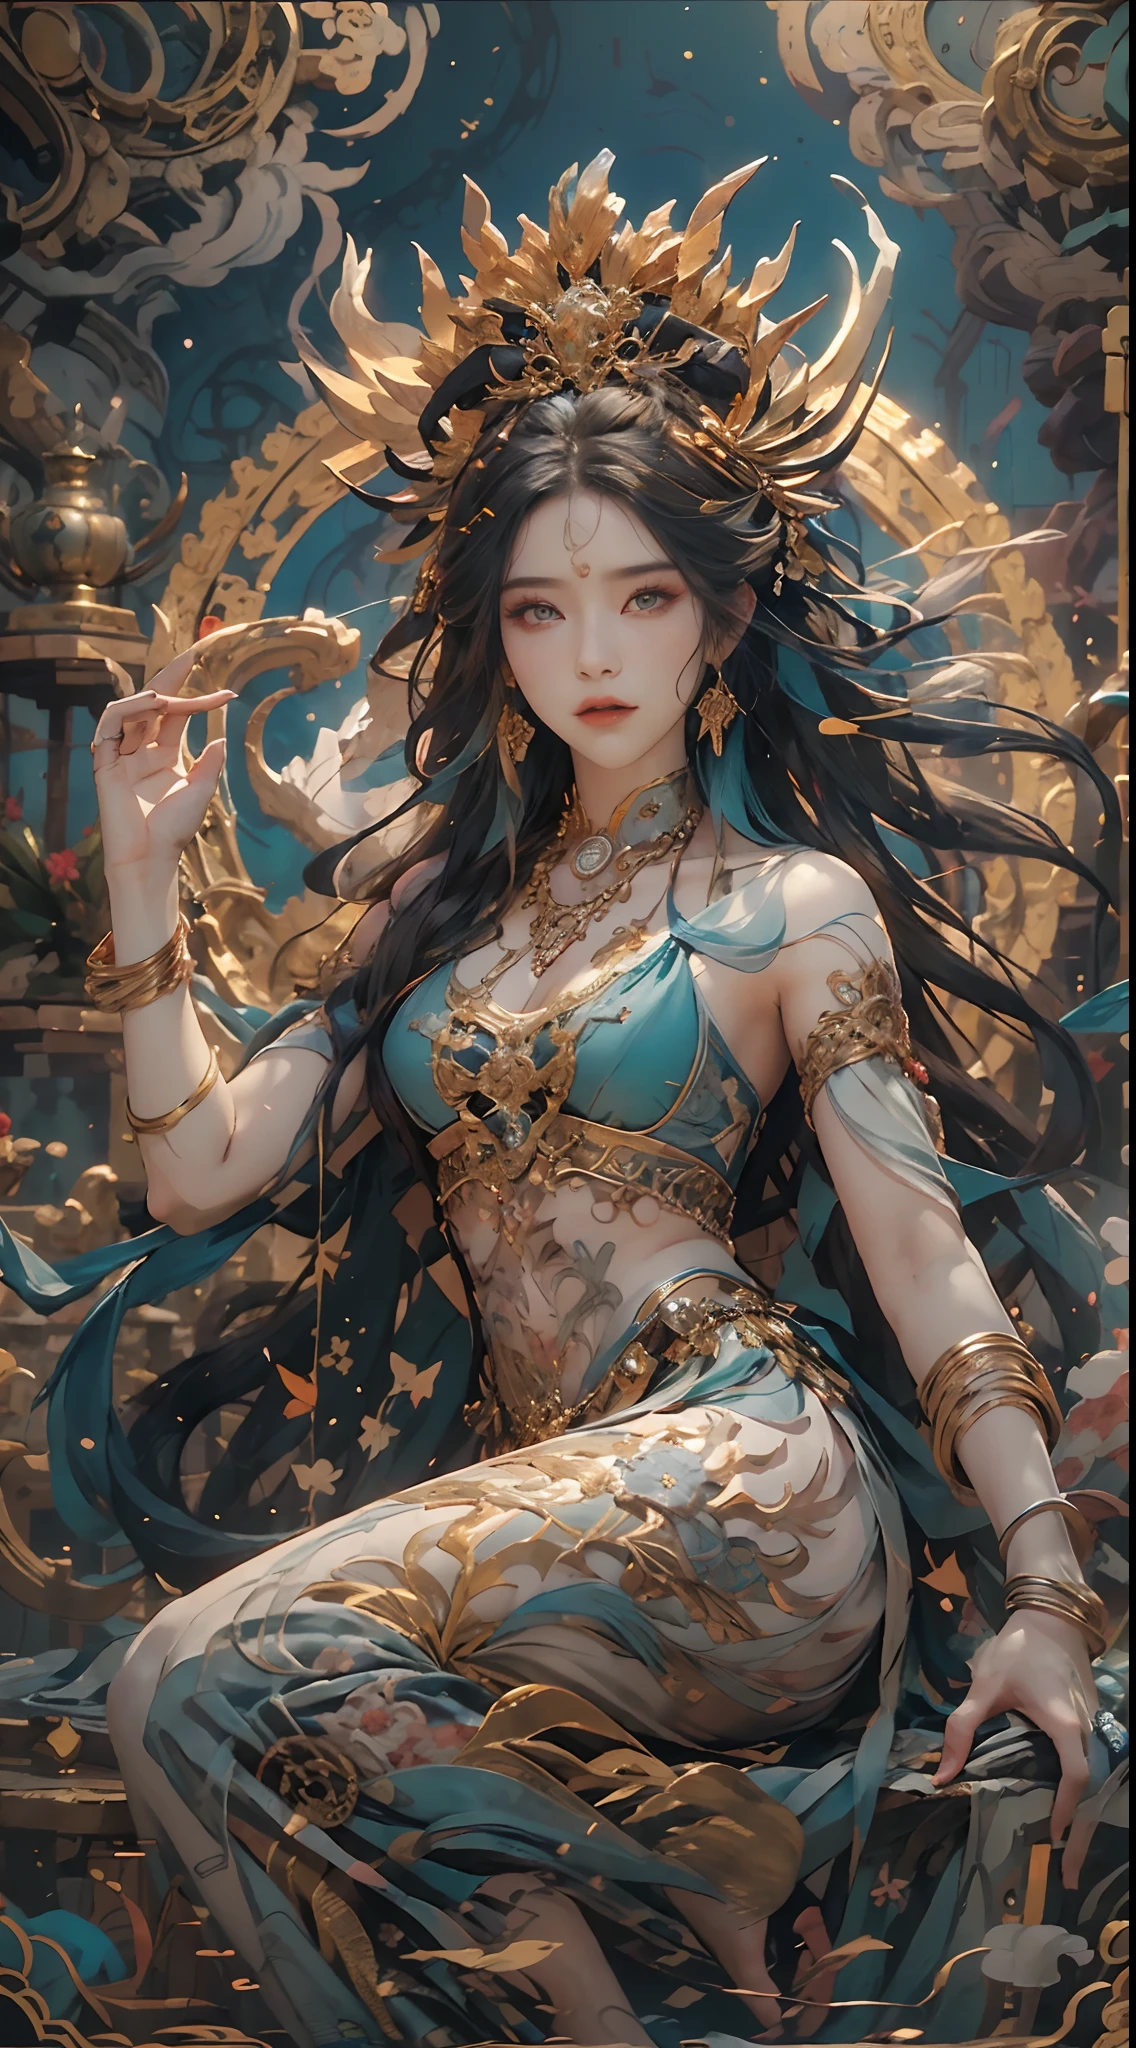 古代の創造の女神を描く，Nu wa，彼女は中国神話の創造の女神である。これは原始社会の母系氏族時代から受け継がれてきた女神の素晴らしい像である。。深い背景，不条理な，素晴らしい、信じられない，すごい composition，(複雑な詳細，ハイパーディテール:1.2)，超写真リアリシズム, 壮大な現実的な, ((ニュートラルカラーで)),(パステルカラー:1.2), 超現実的な, + 映画撮影 + ダイナミックな構成, 信じられないほど詳細, シャープ, 映画のような, 暖かい光, 光の効果, ドラマティックライト, (複雑なディテール:1.1), 複雑な背景, (グレッグ・ルトコフスキー:0.8), (青緑とオレンジ:0.3）すごい, 詳細な顔, 細かい目，全身写真，空を飛ぶ，優雅な姿勢，正しい手，(複雑で精巧な部品:1.1),裸足，偉大な女神の像，グレートウィルダネスイーストメリディアン，